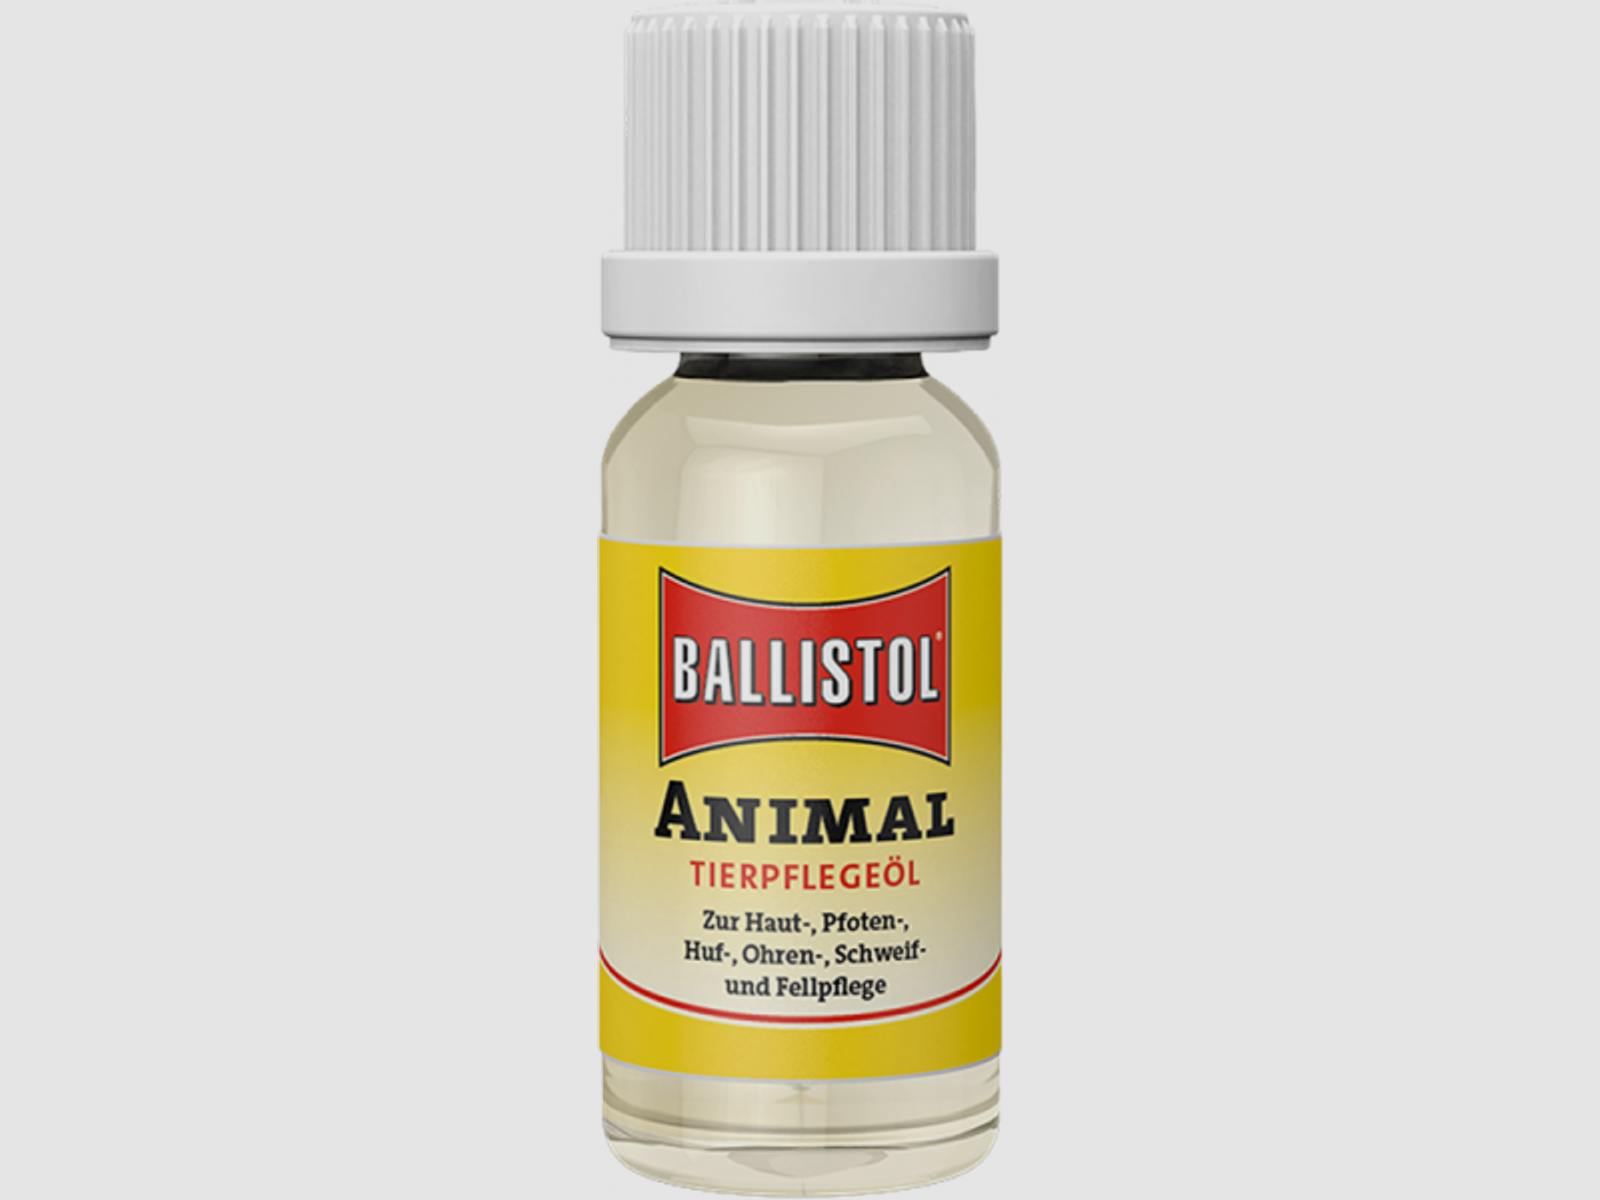 Ballistol Animal Tierpflegemittel